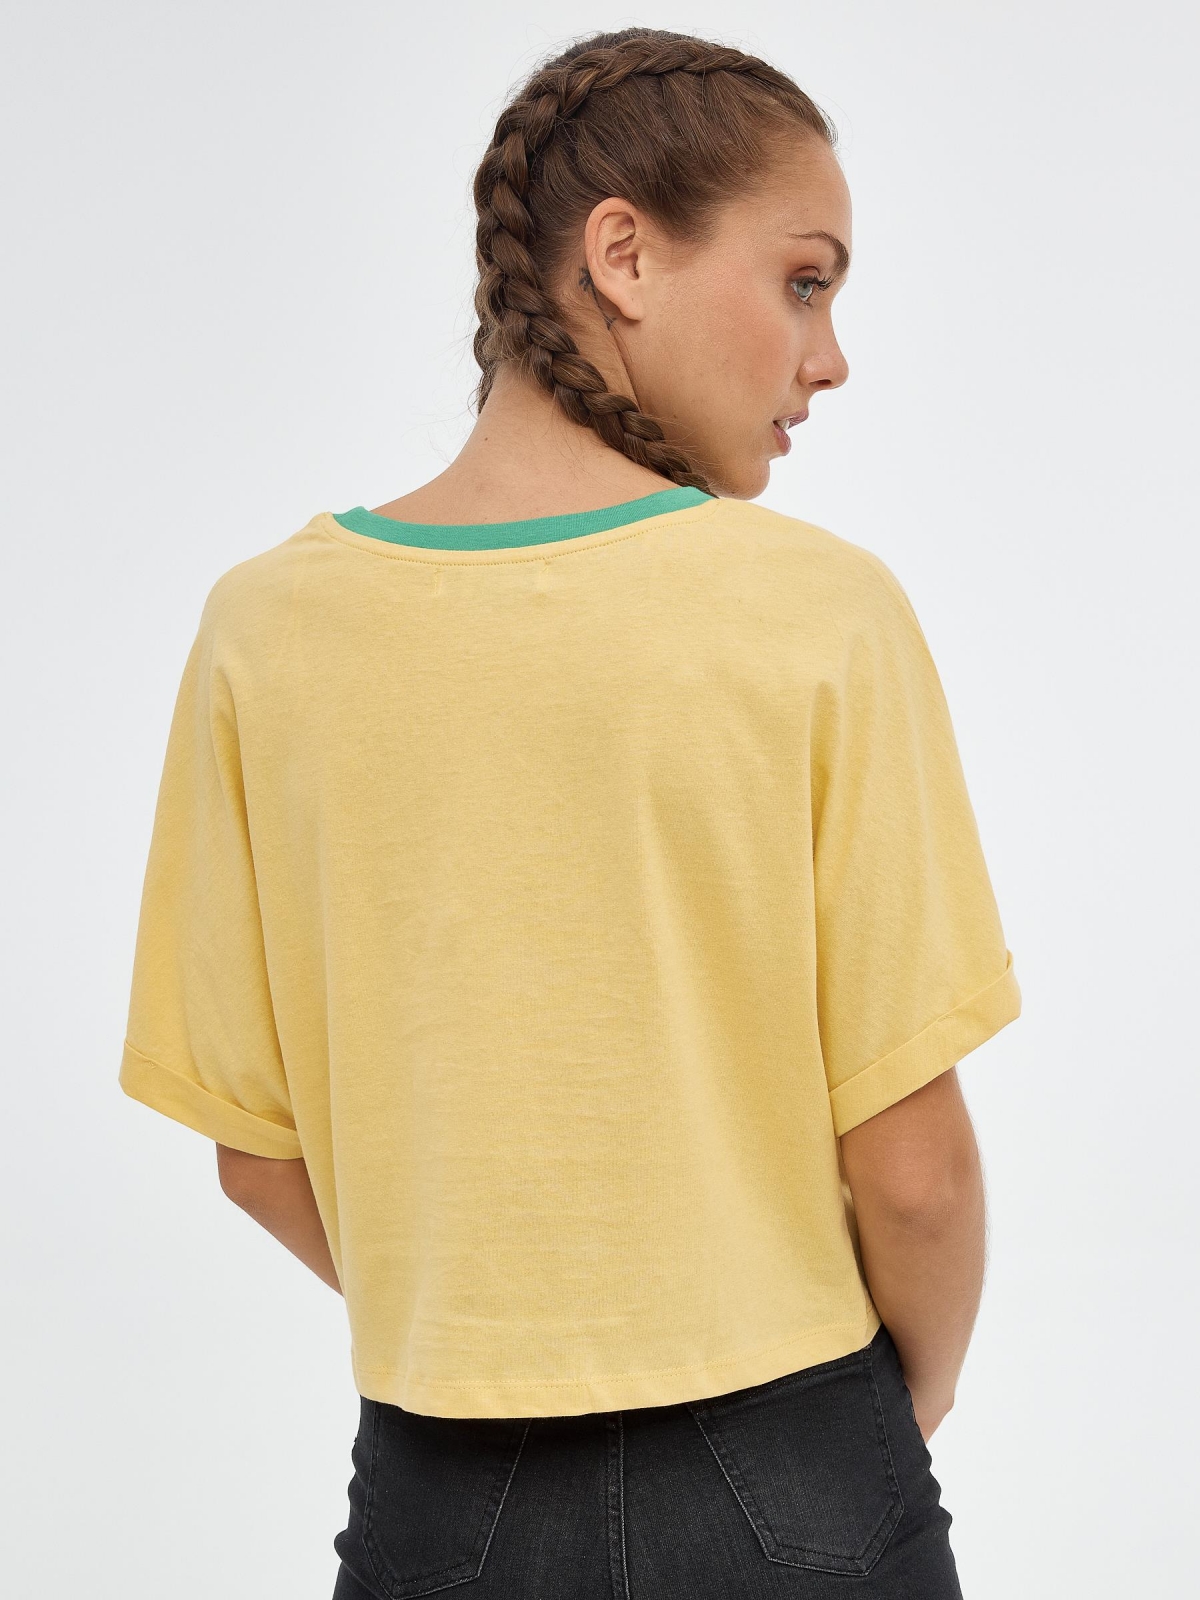 T-shirt crop camaleão amarelo pastel vista meia traseira